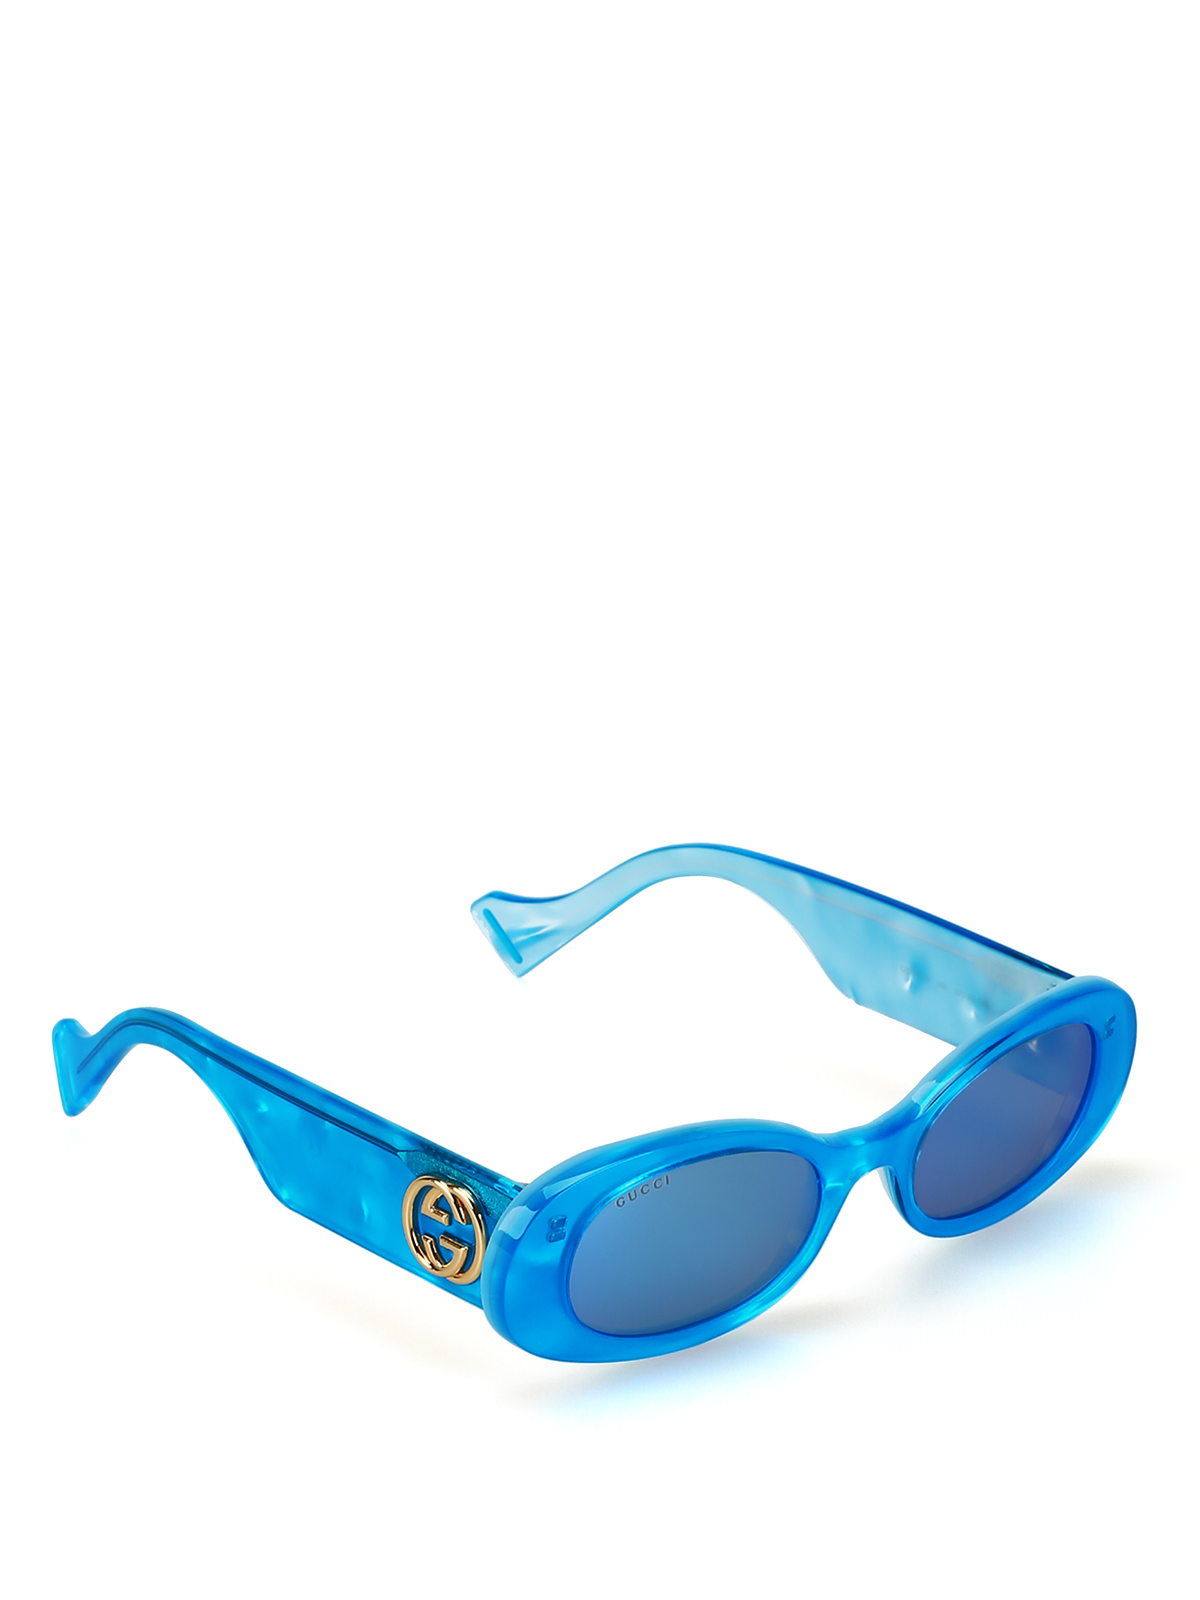 korrekt øve sig Vedhæft til Sunglasses Gucci - Pearly light blue oval sunglasses - GG0517S006